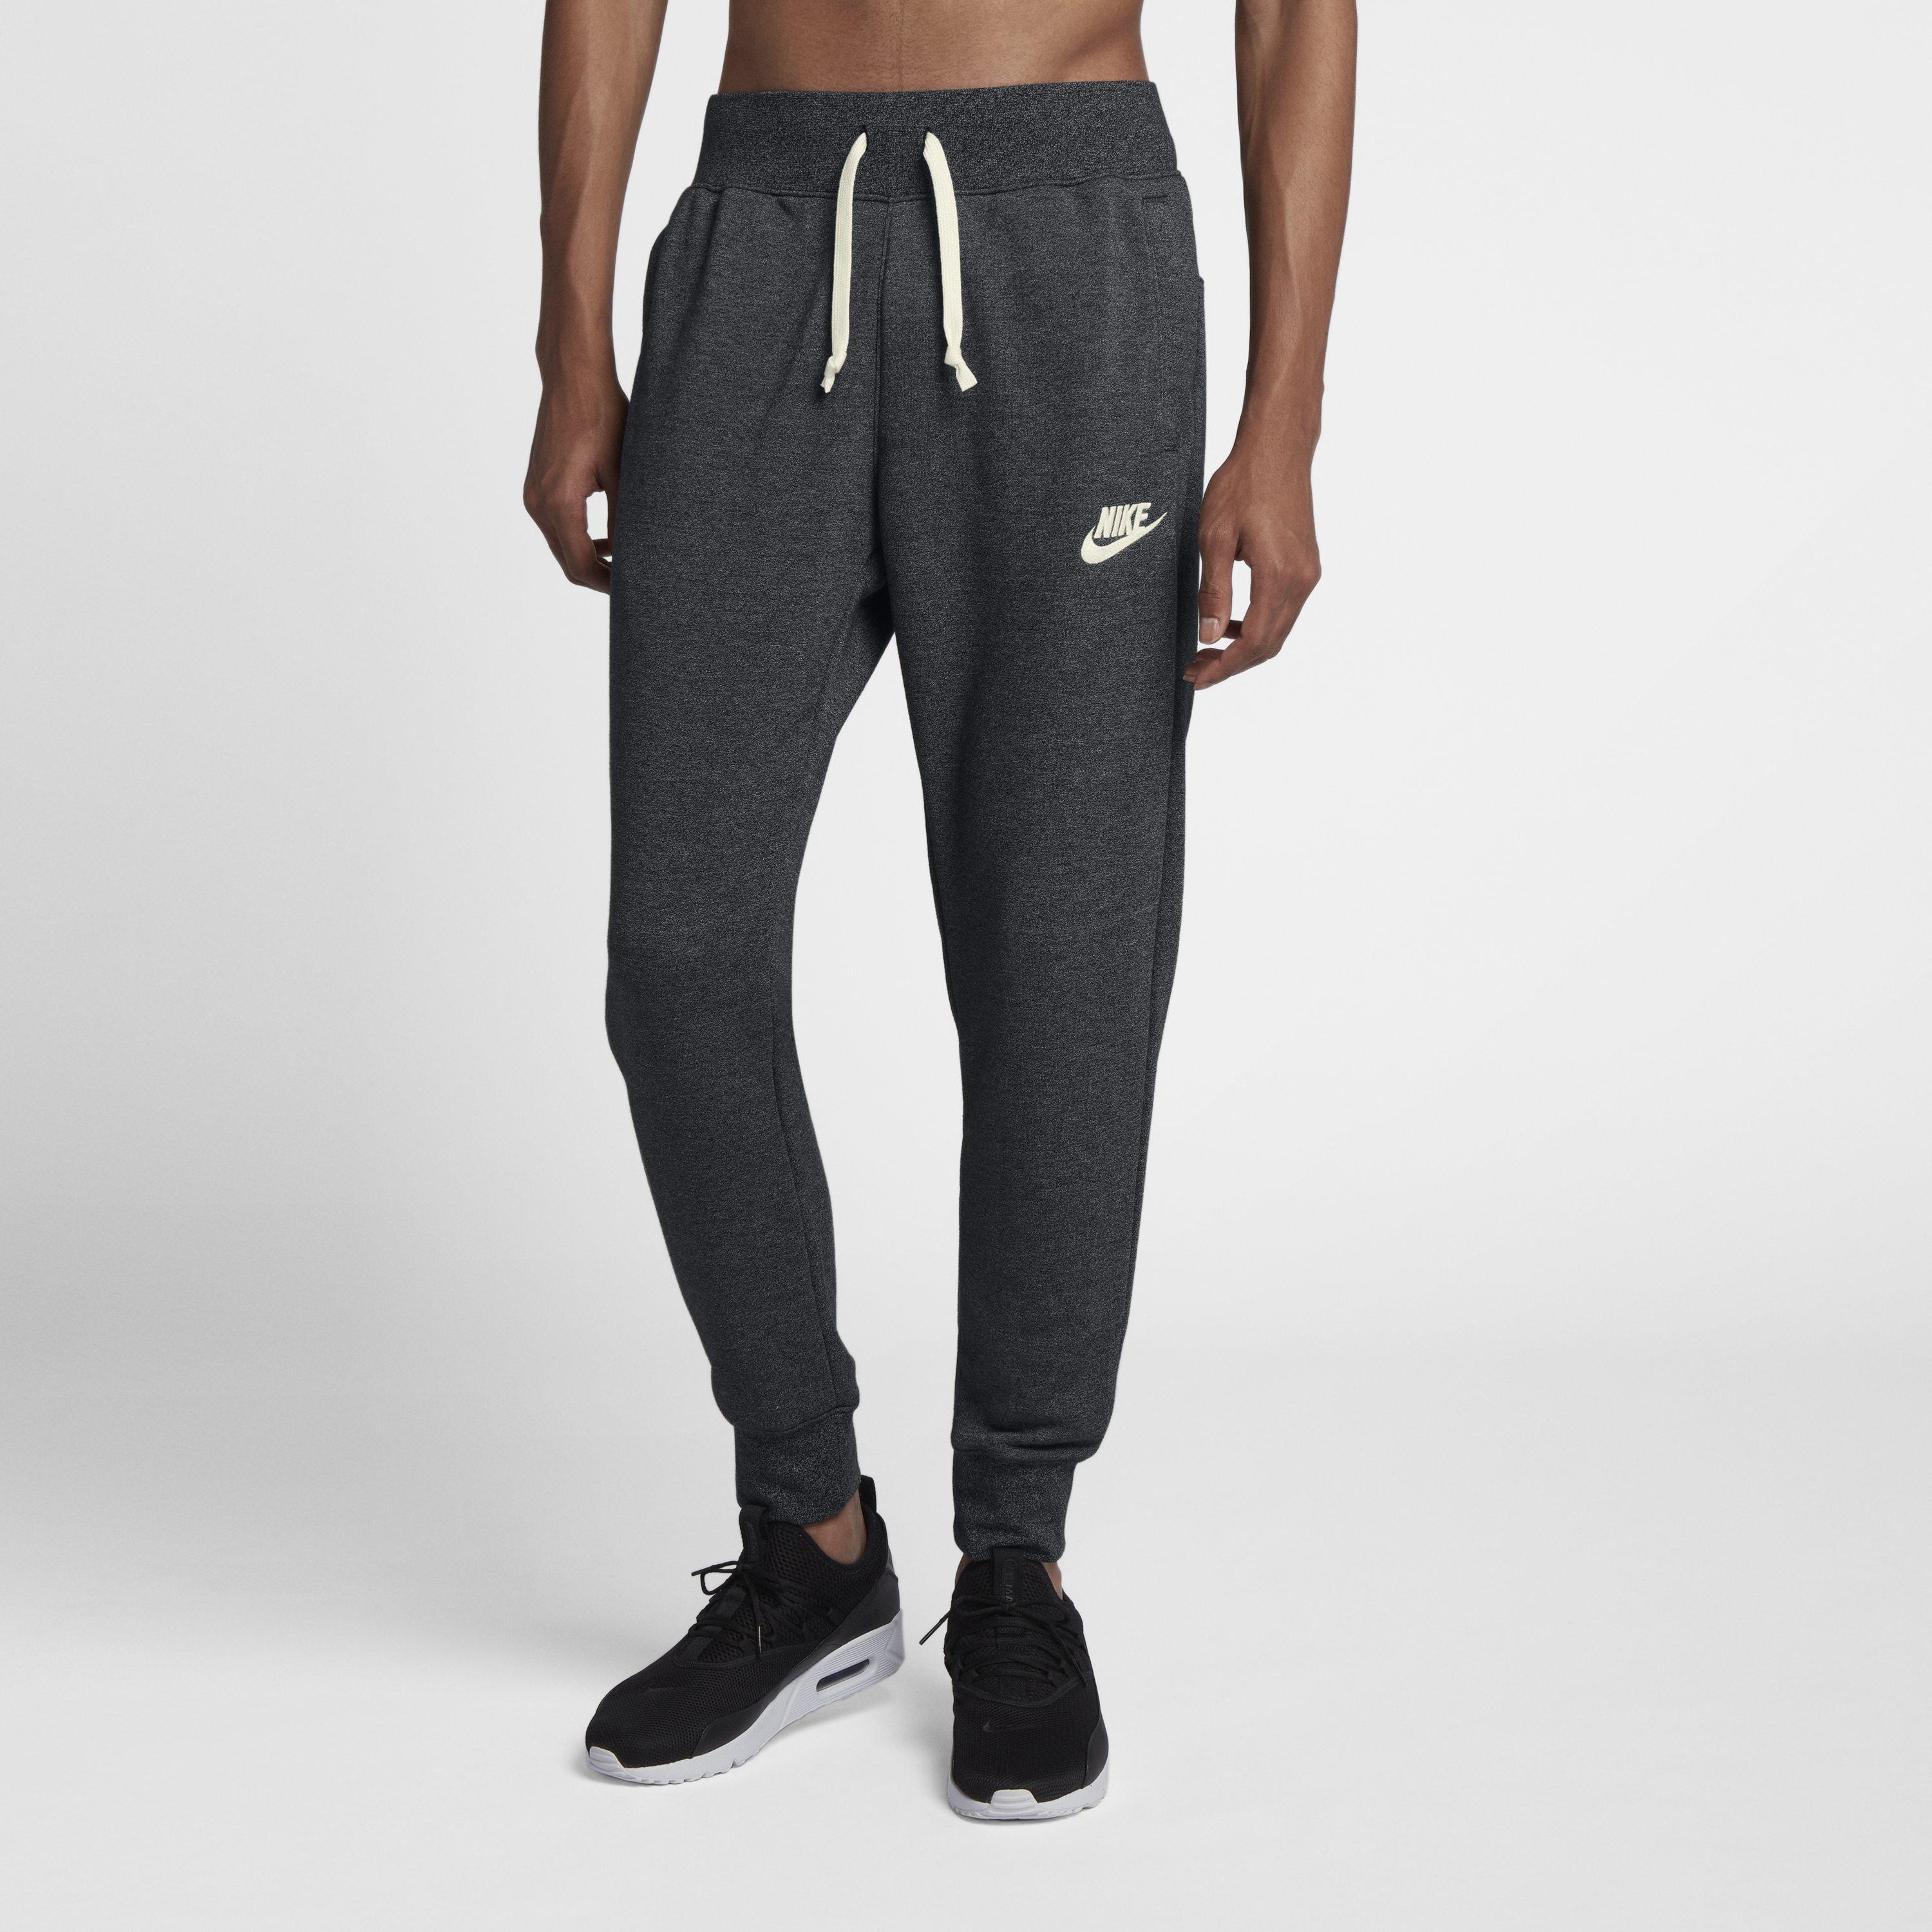 Nike Sportswear Heritage Joggers in Black for Men - Lyst